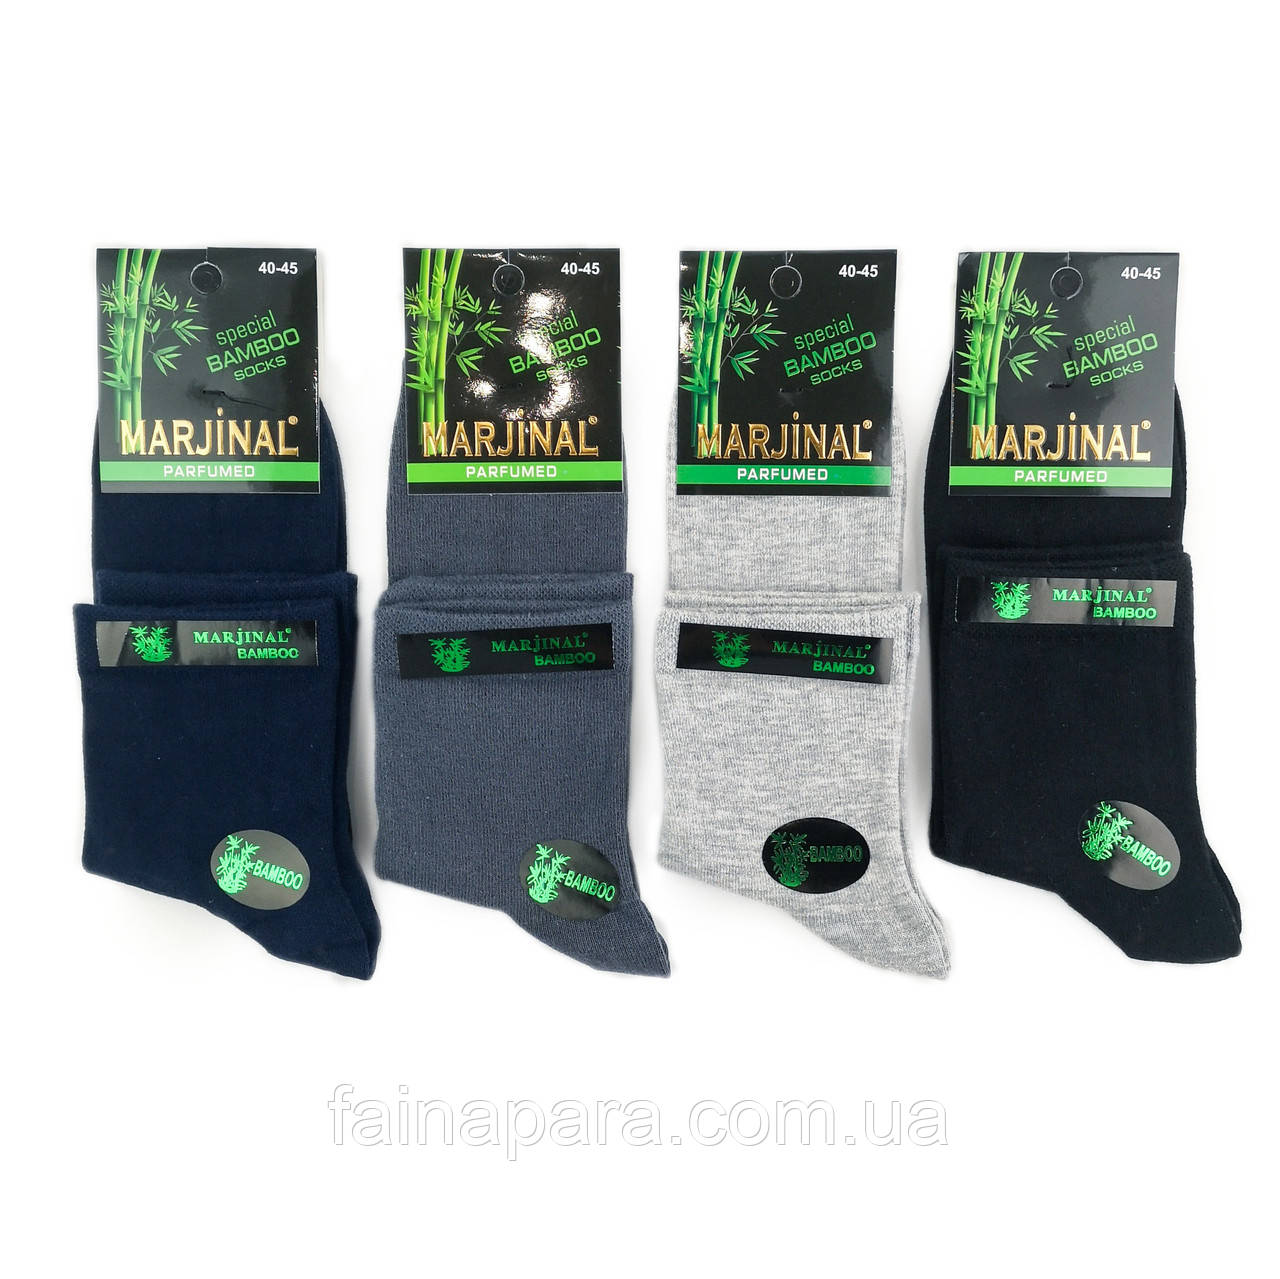 Чоловічі середні бамбукові ароматизовані шкарпетки Marjinal Туреччина